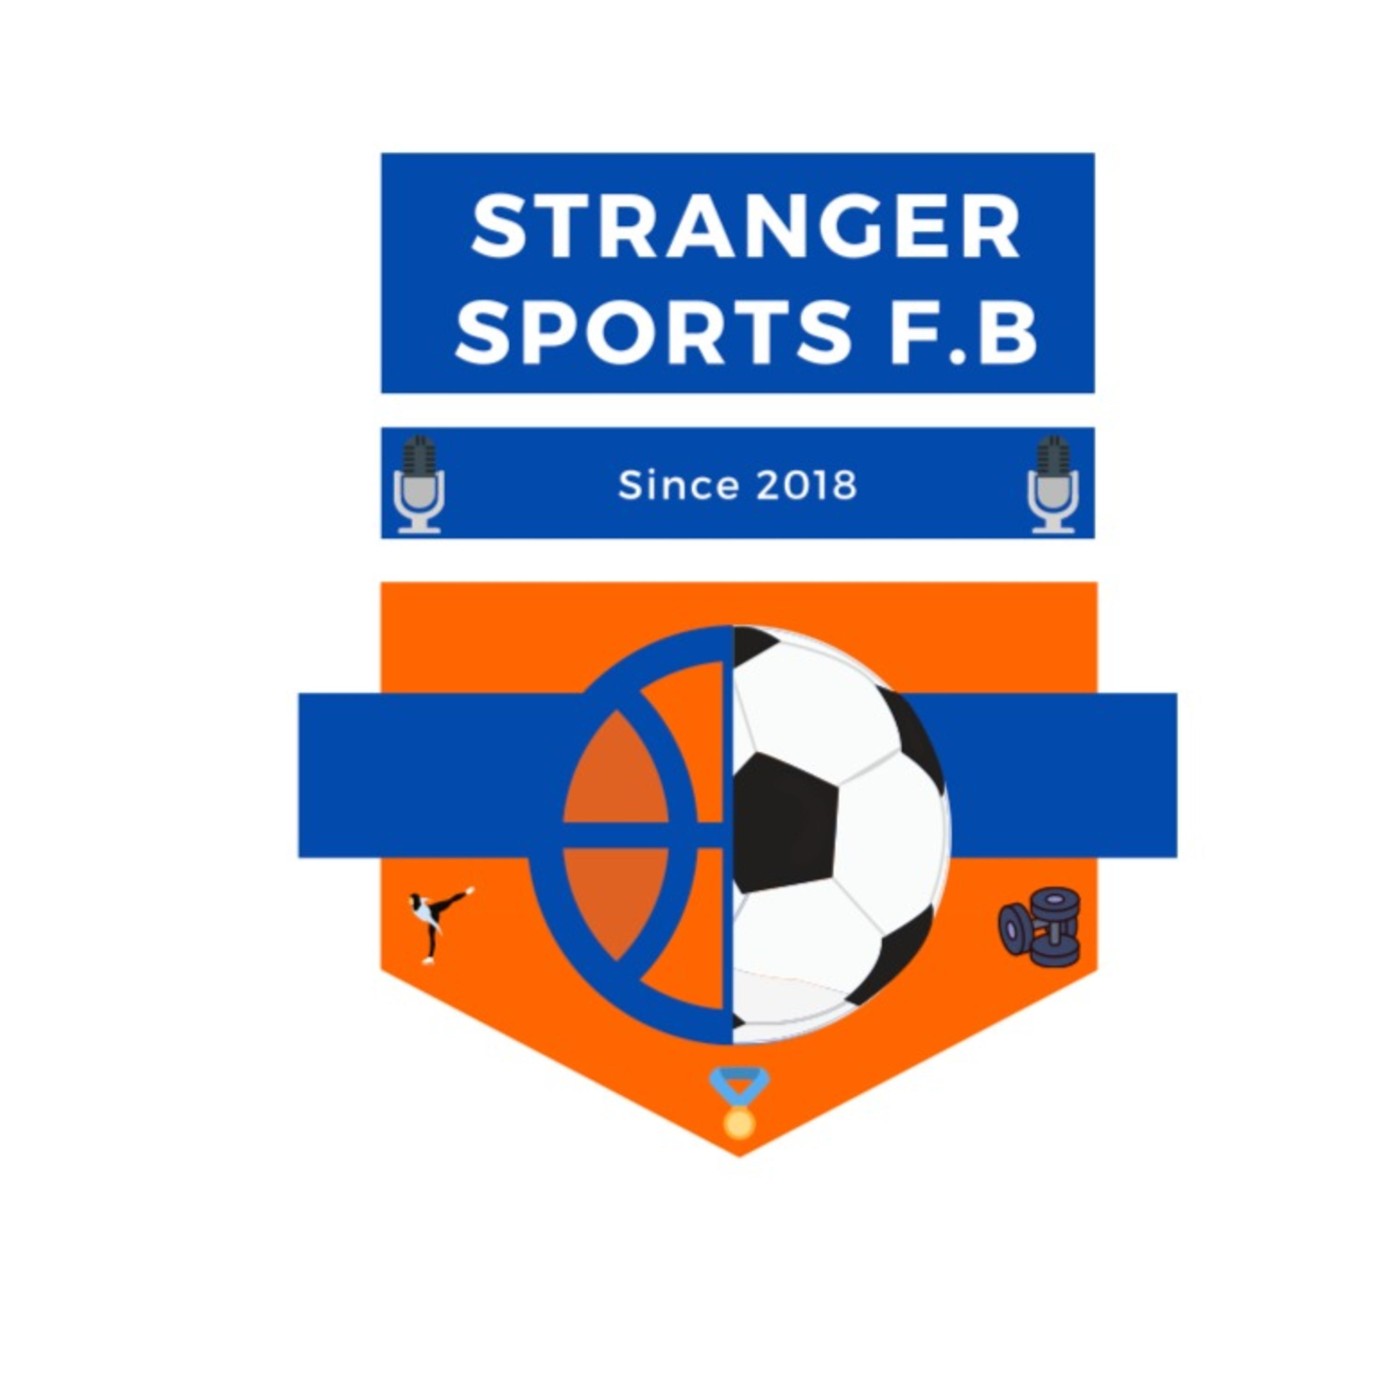 Stranger sports #4